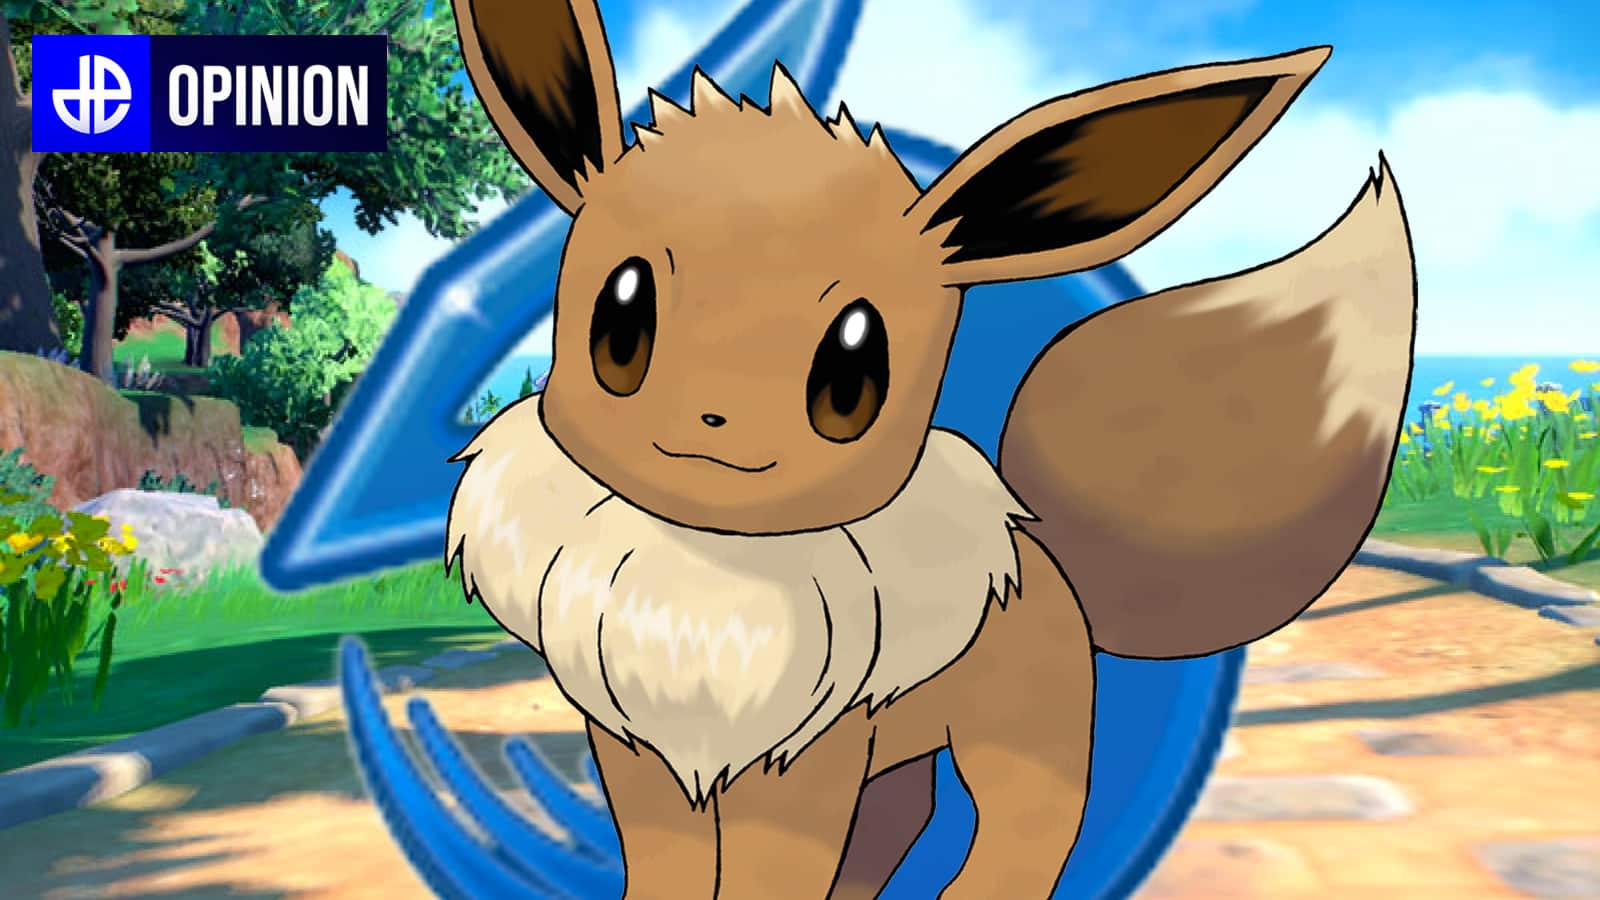 Pokémon Go Eevee Evolution: Gen 2 brings new Eevee evolutions